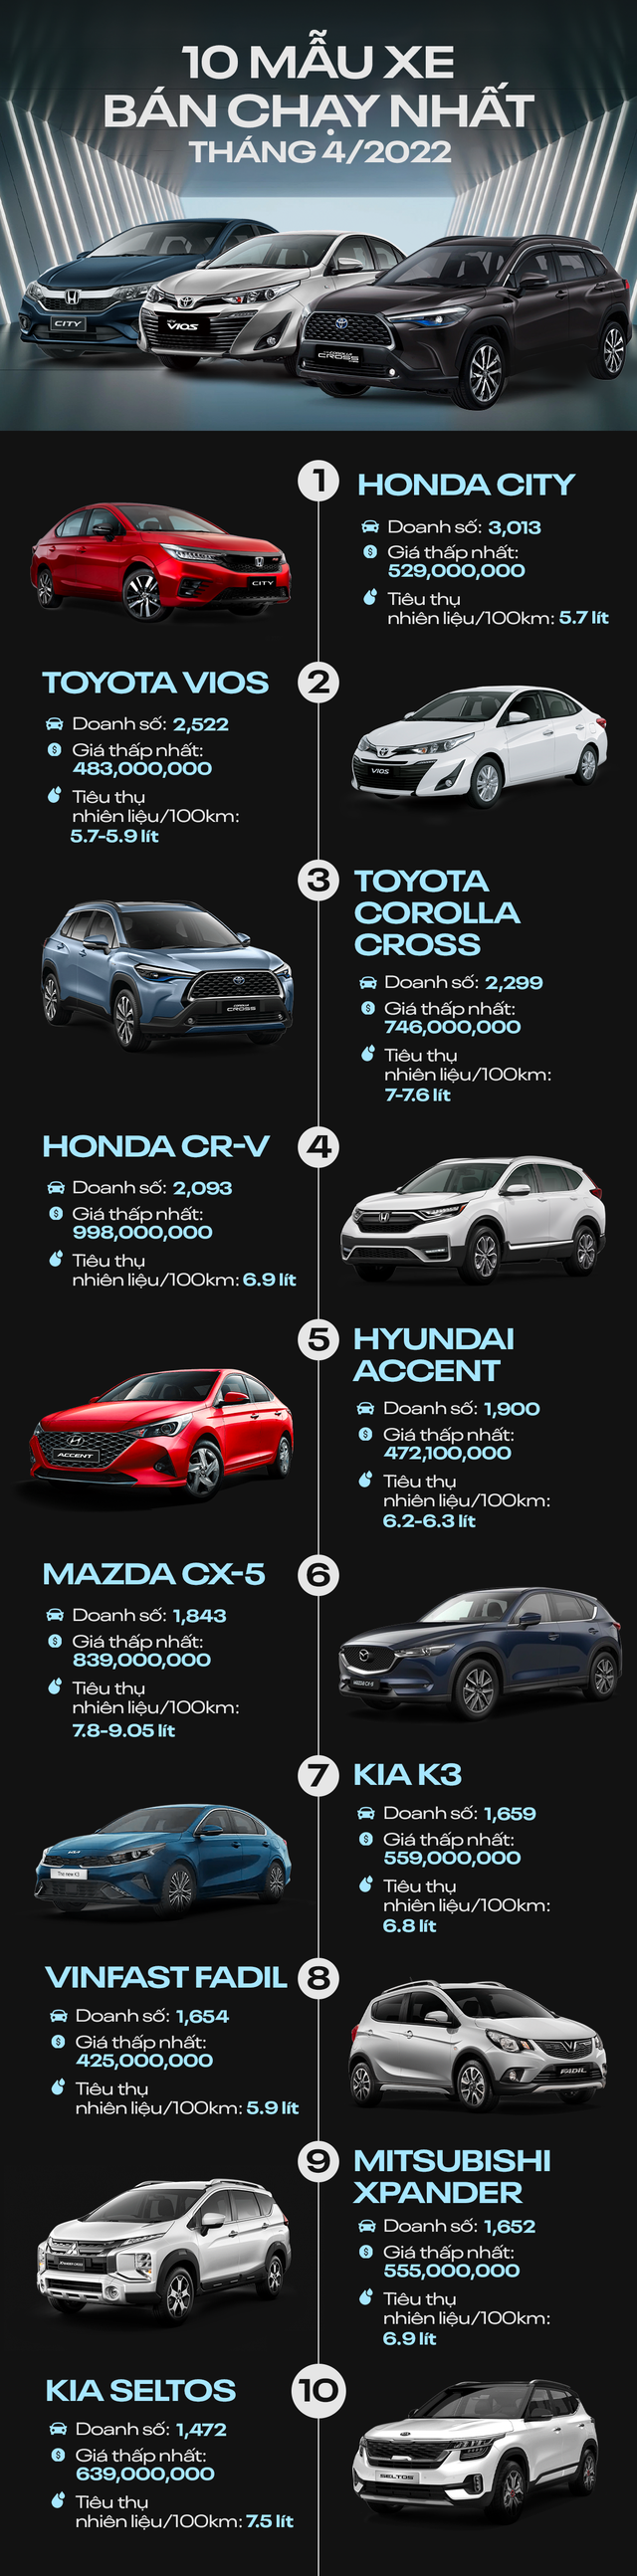 [Infographic] 10 mẫu xe bán chạy nhất tháng 4/2022 - Ảnh 1.